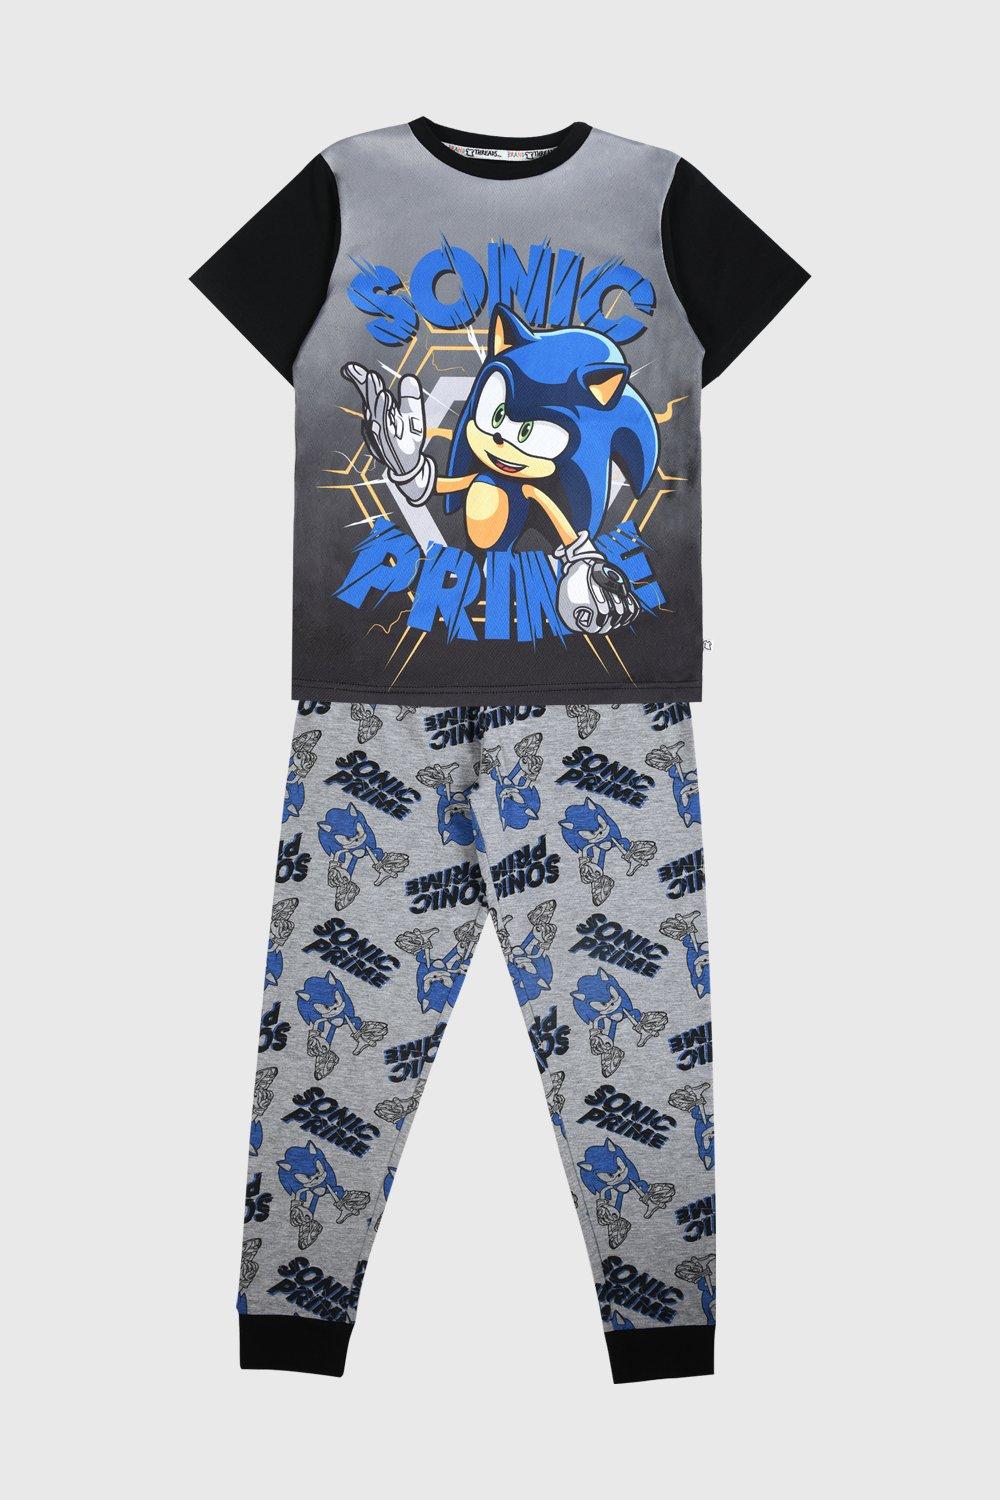 Sonic Prime Pyjamas